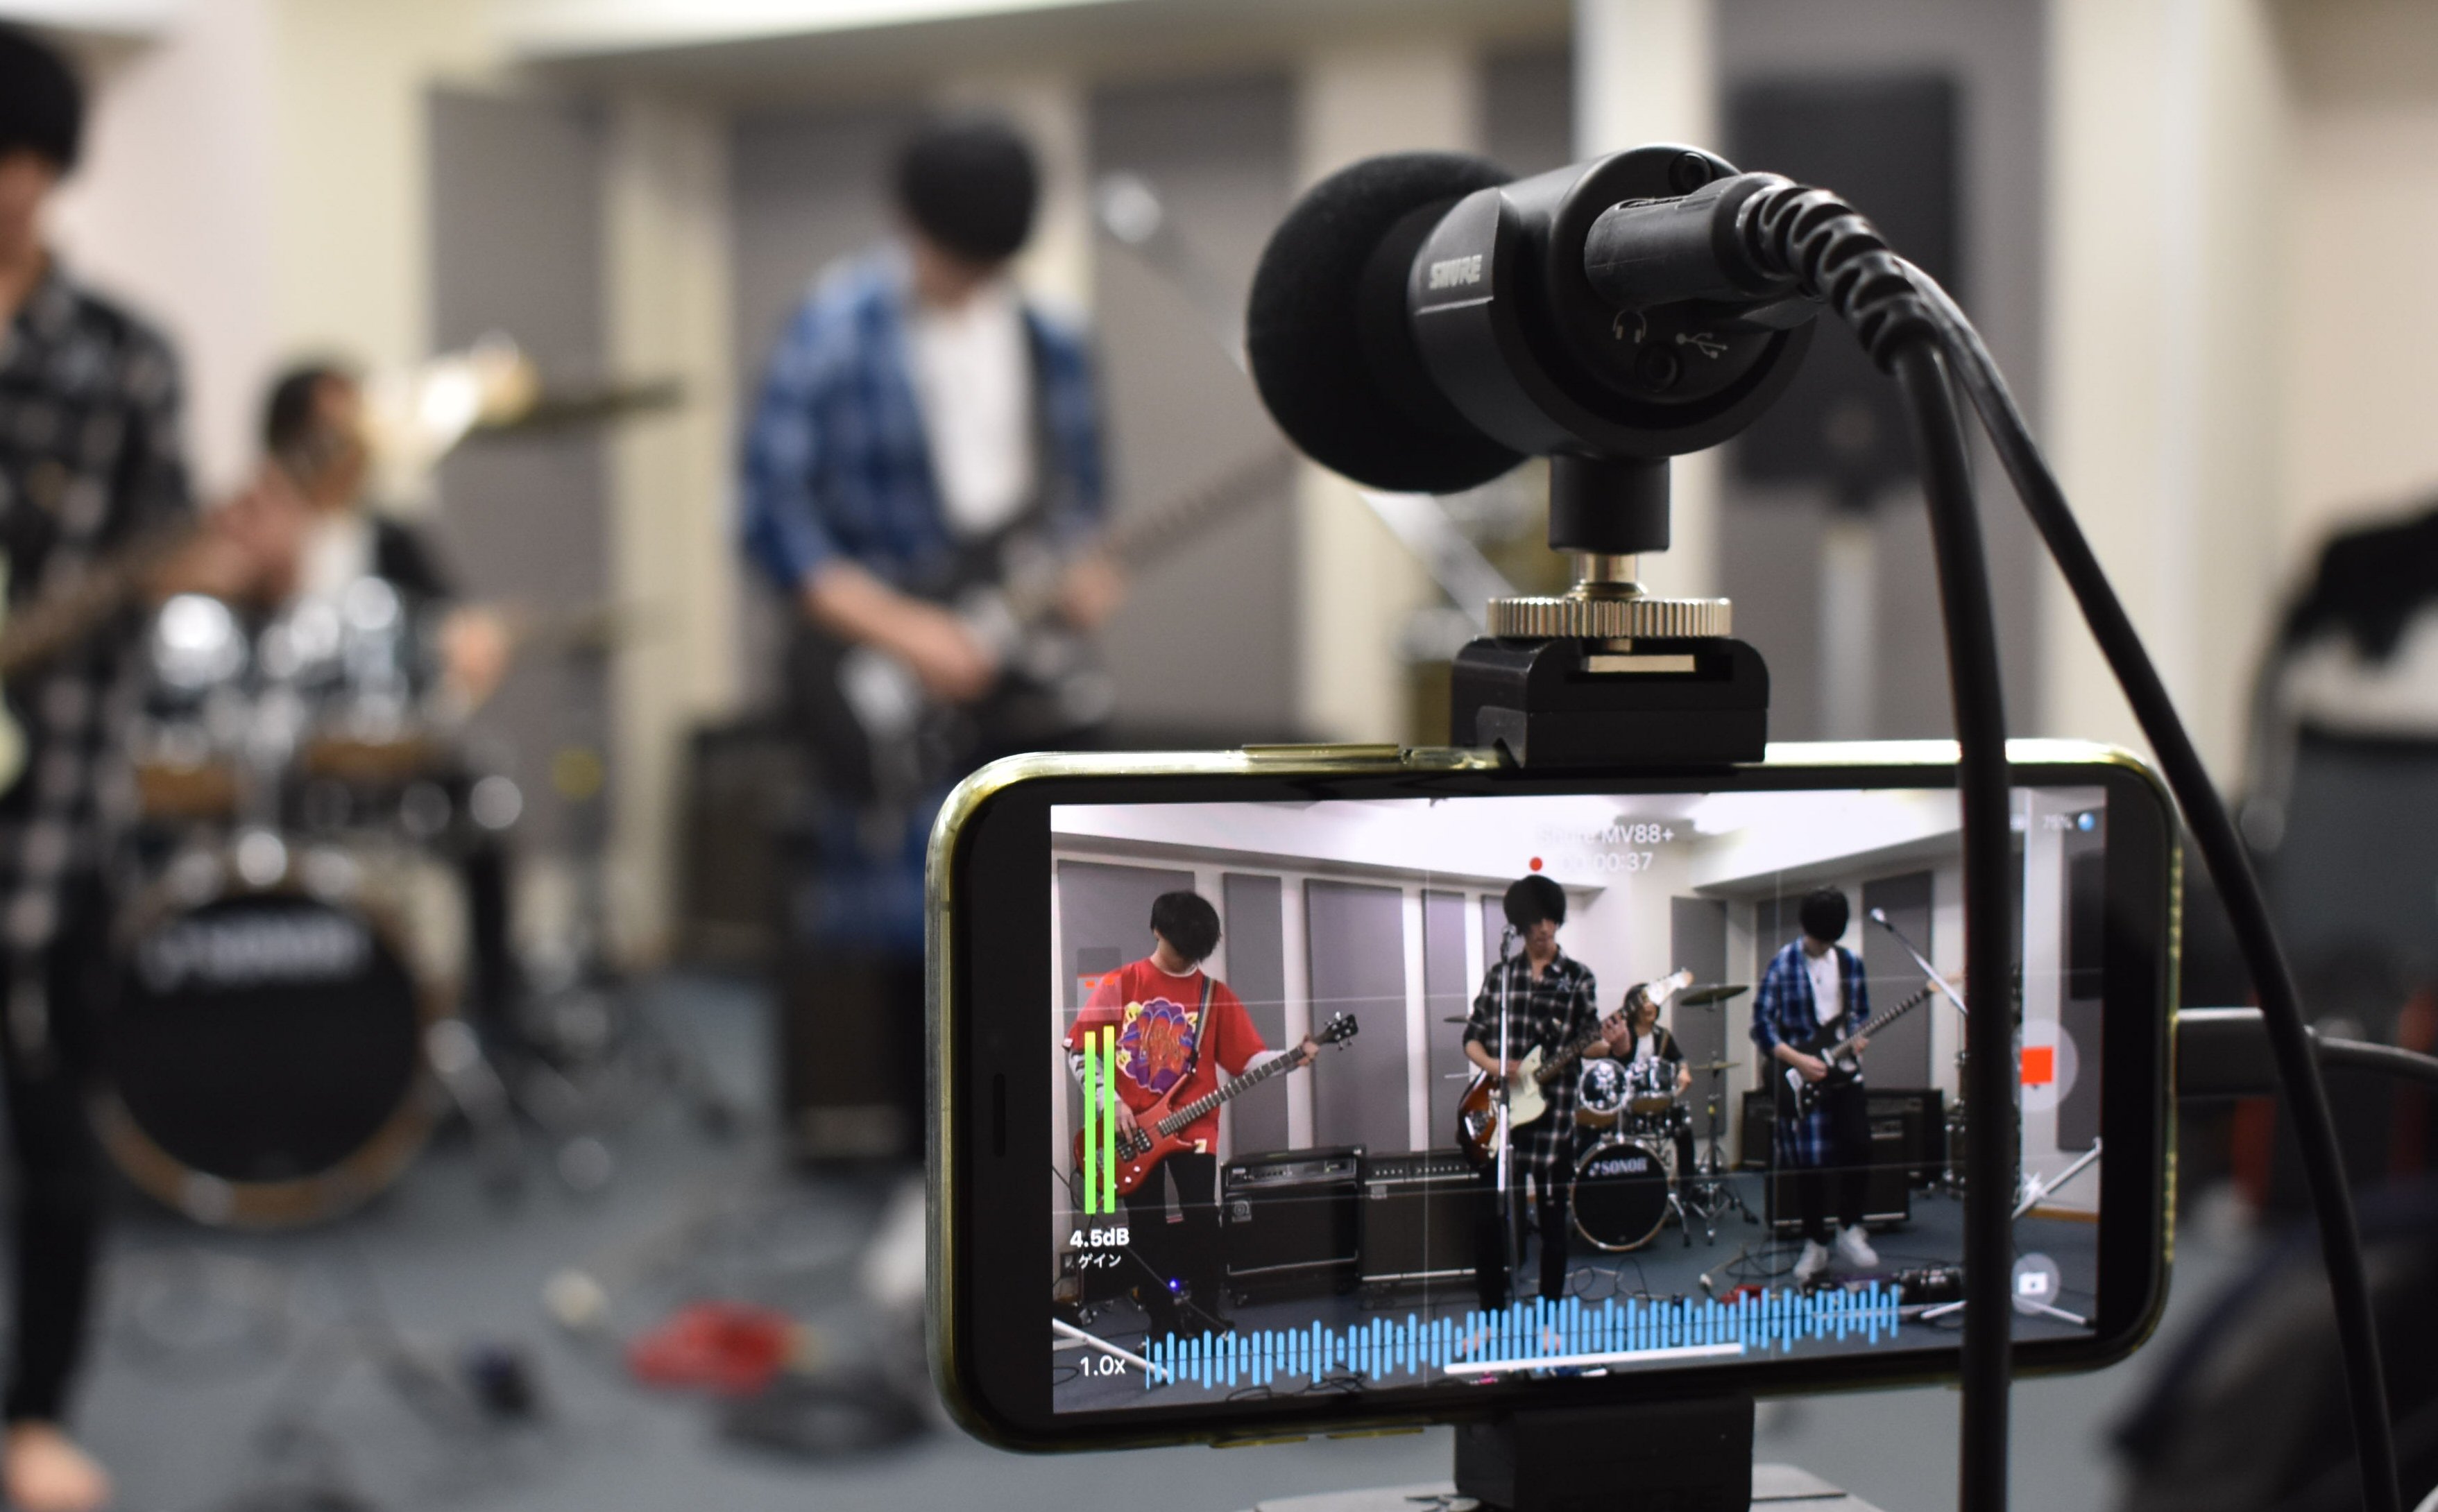 iPhone/Androidで高音質にビデオ撮影するための強力な小型コンデンサーマイク、Shure MV88+ ビデオキットをリハスタで使ってみた |  藤本健の “DTMステーション”